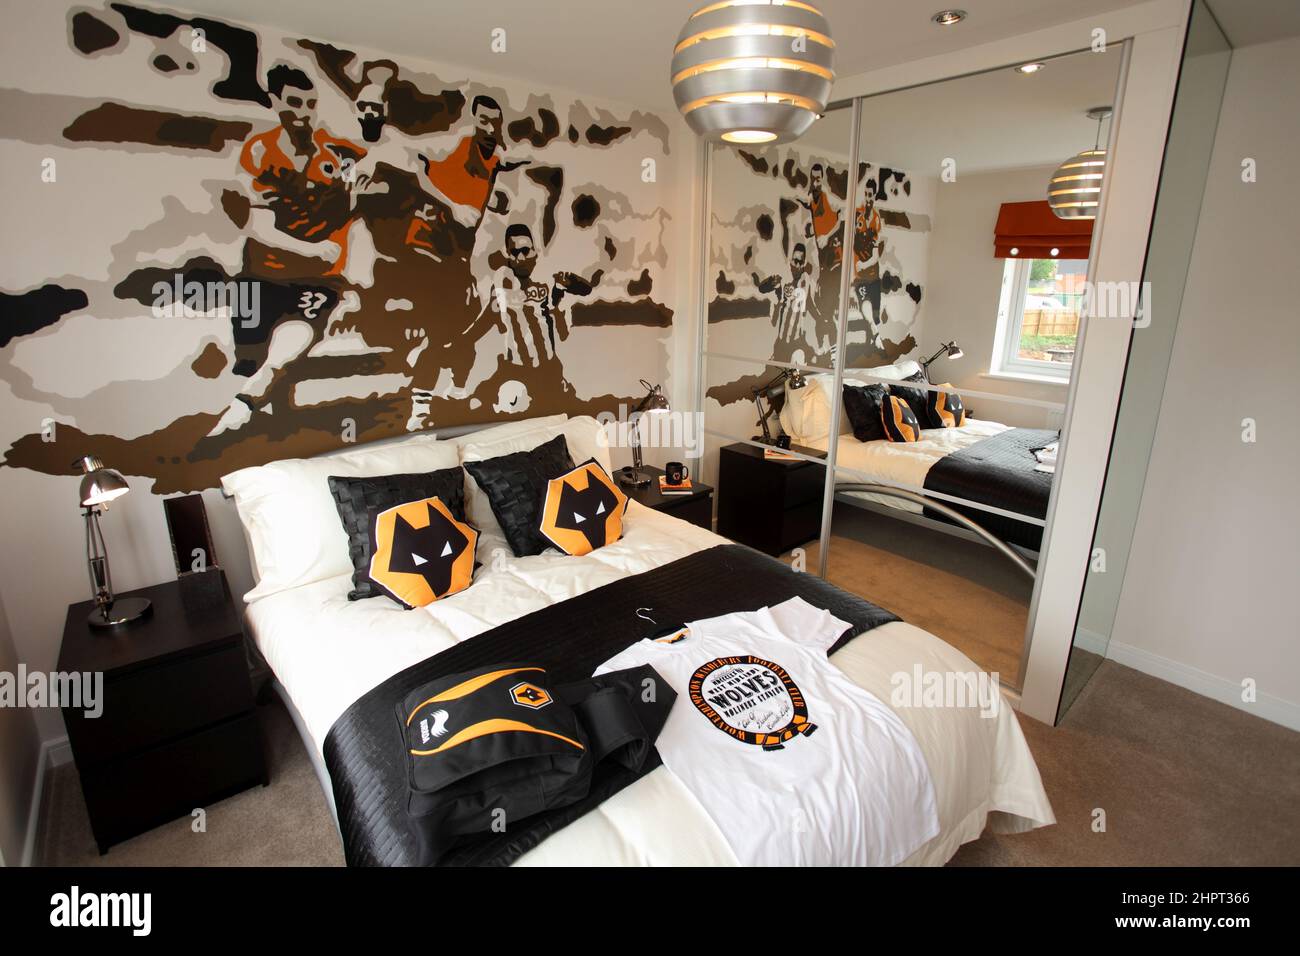 Dormitorio temático Wolverhampton Wanderers, dormitorio para niños, dormitorio para niños, mural de fútbol, cama doble. Foto de stock